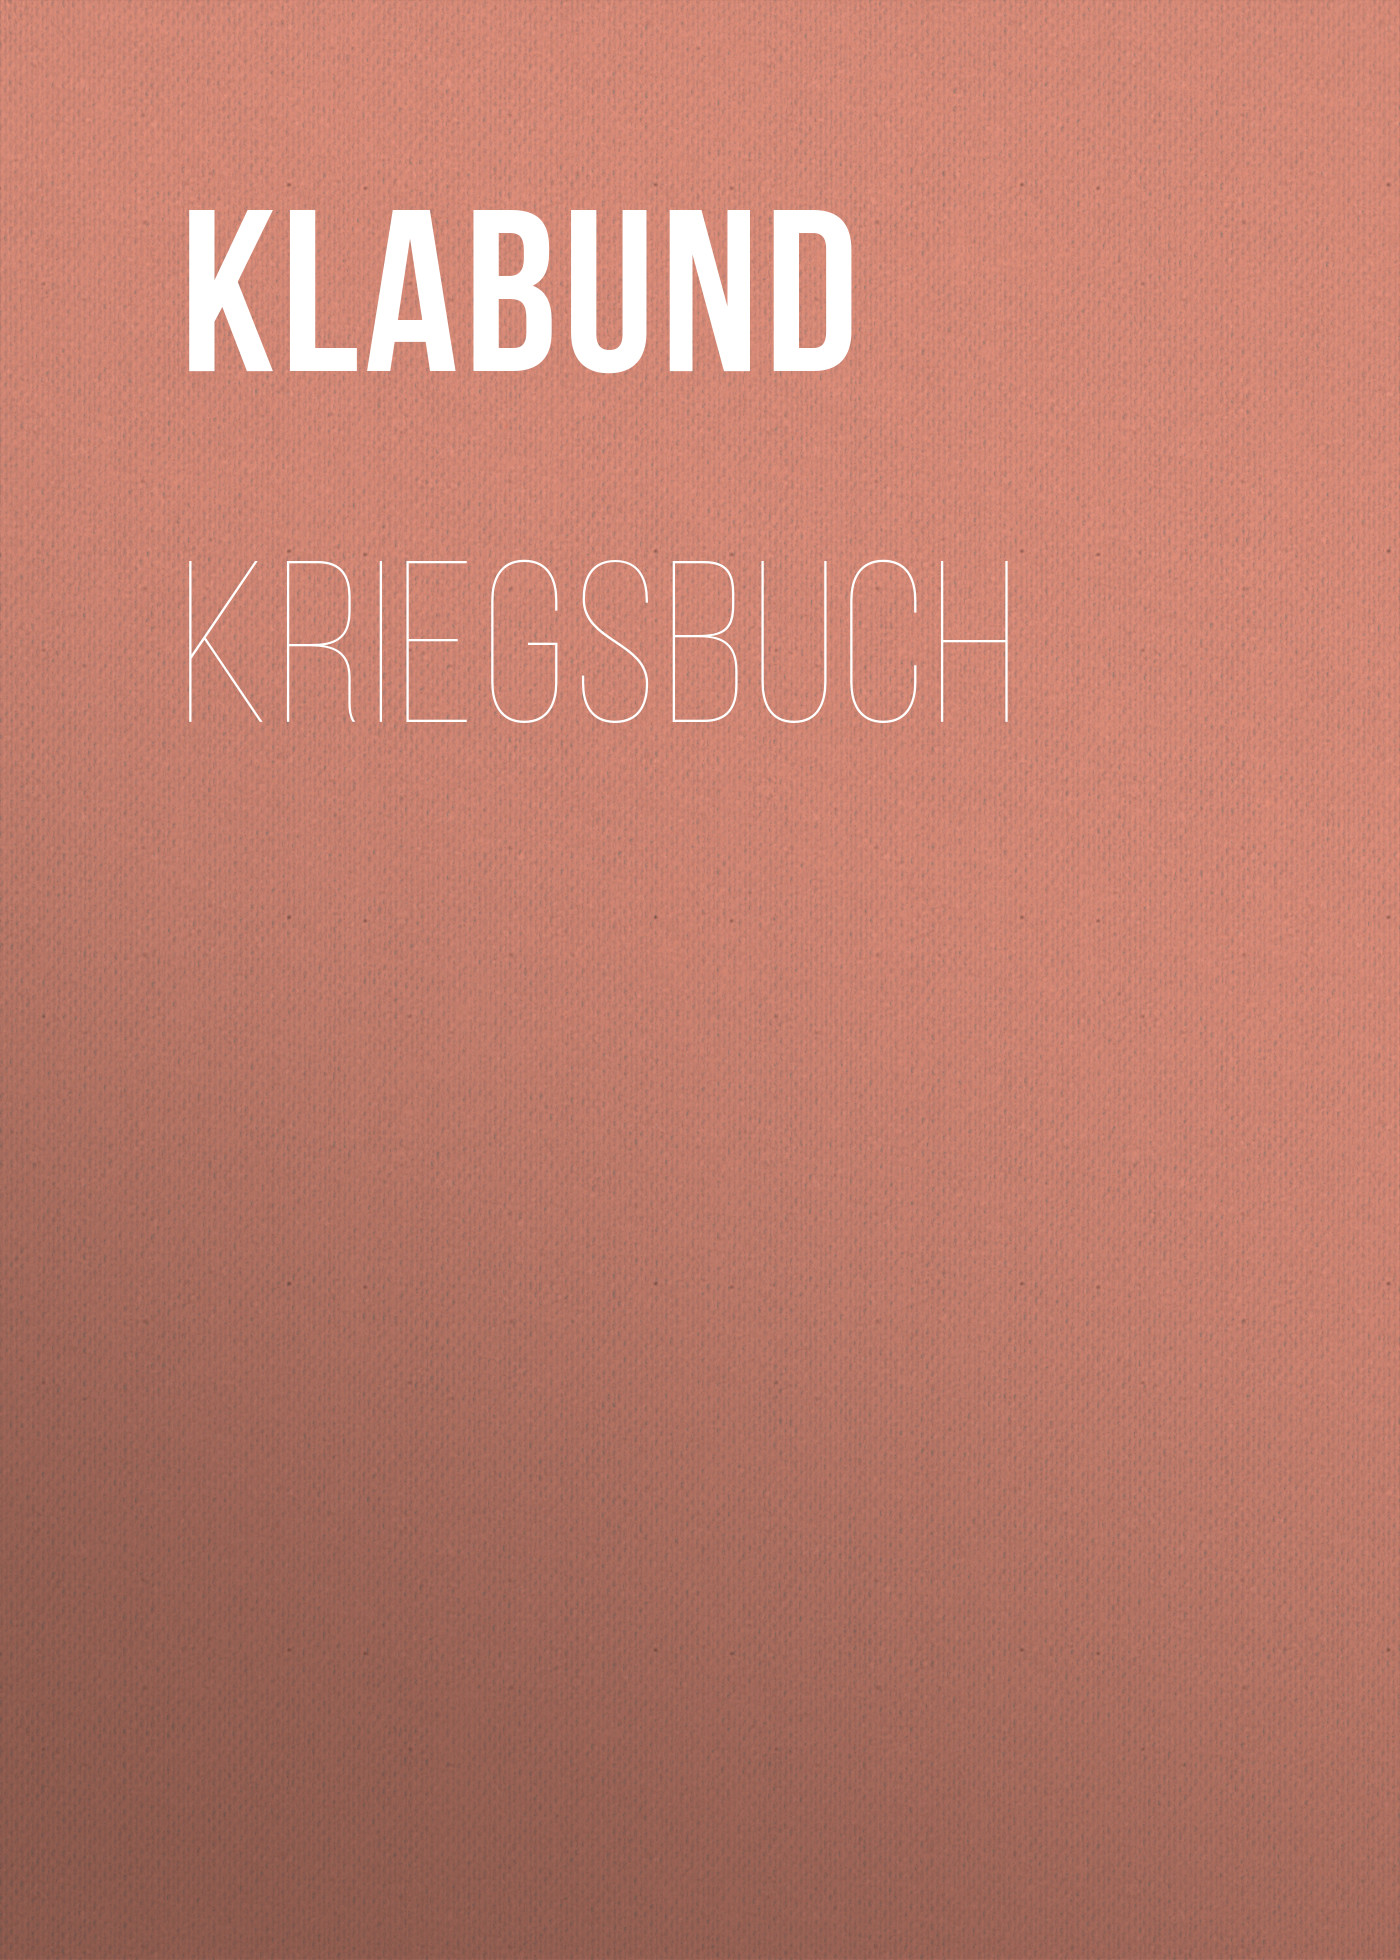 Книга Kriegsbuch из серии , созданная Klabund , может относится к жанру Зарубежная классика. Стоимость электронной книги Kriegsbuch с идентификатором 48633980 составляет 0 руб.